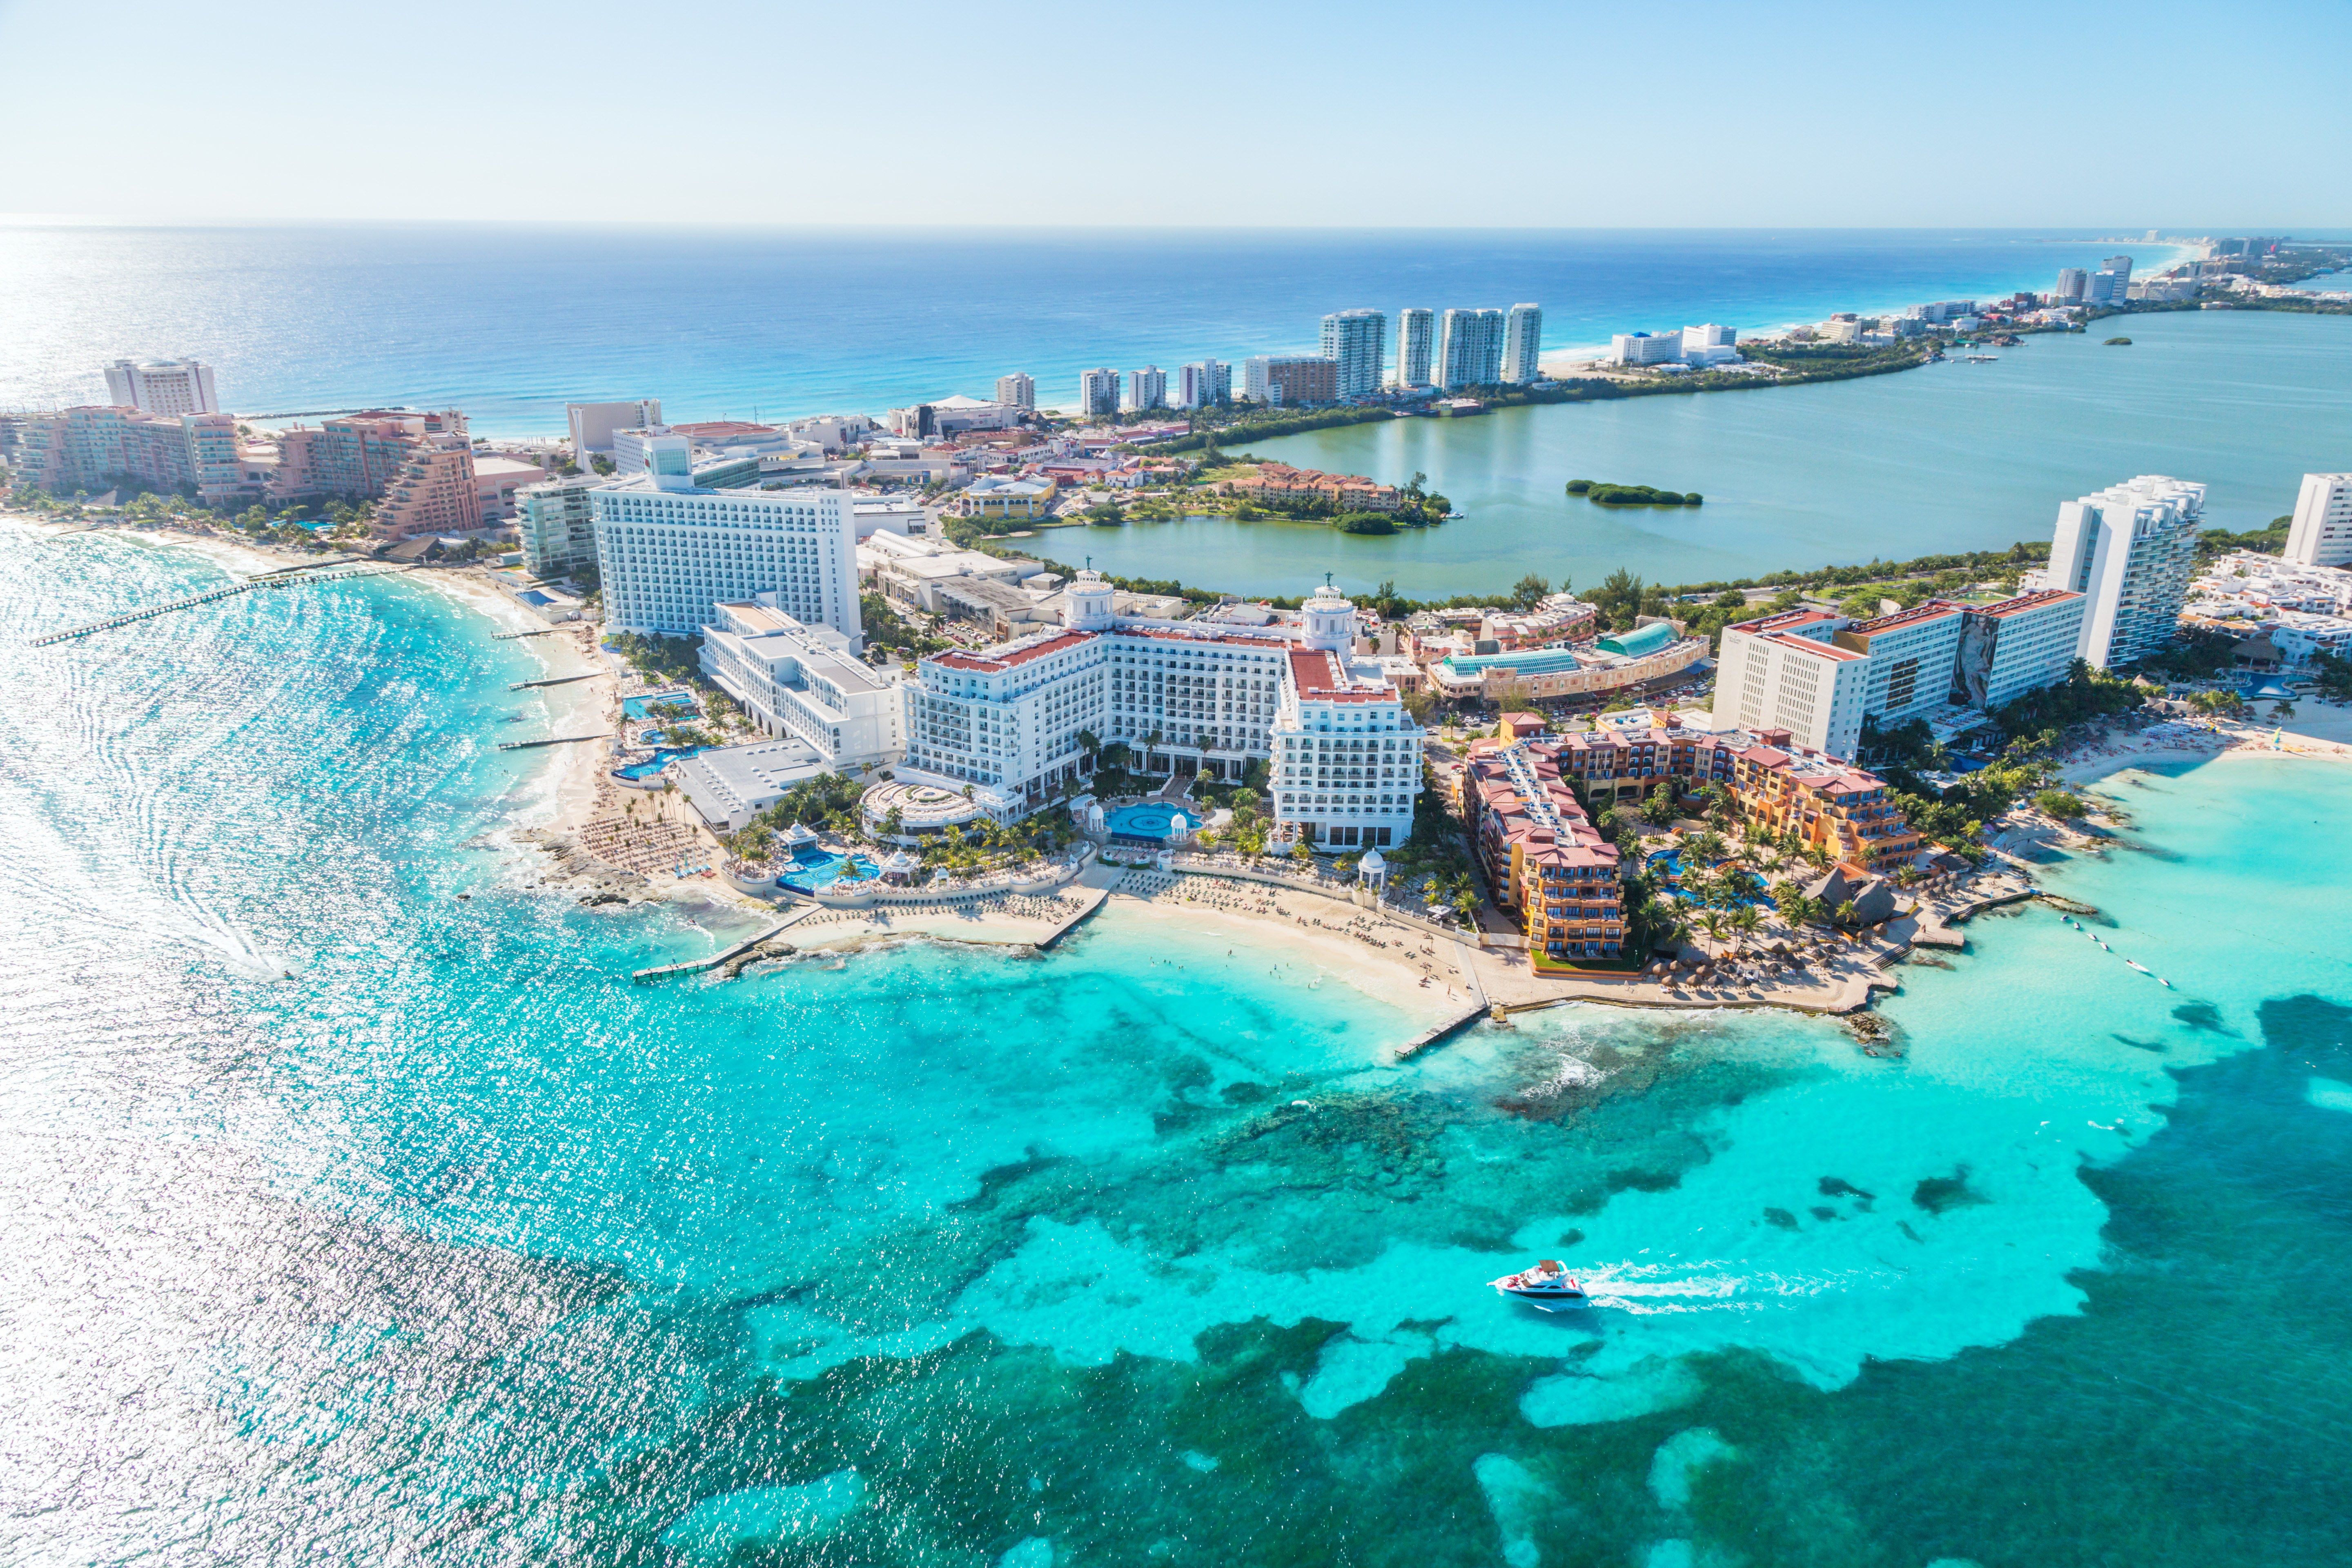 Cancun Background